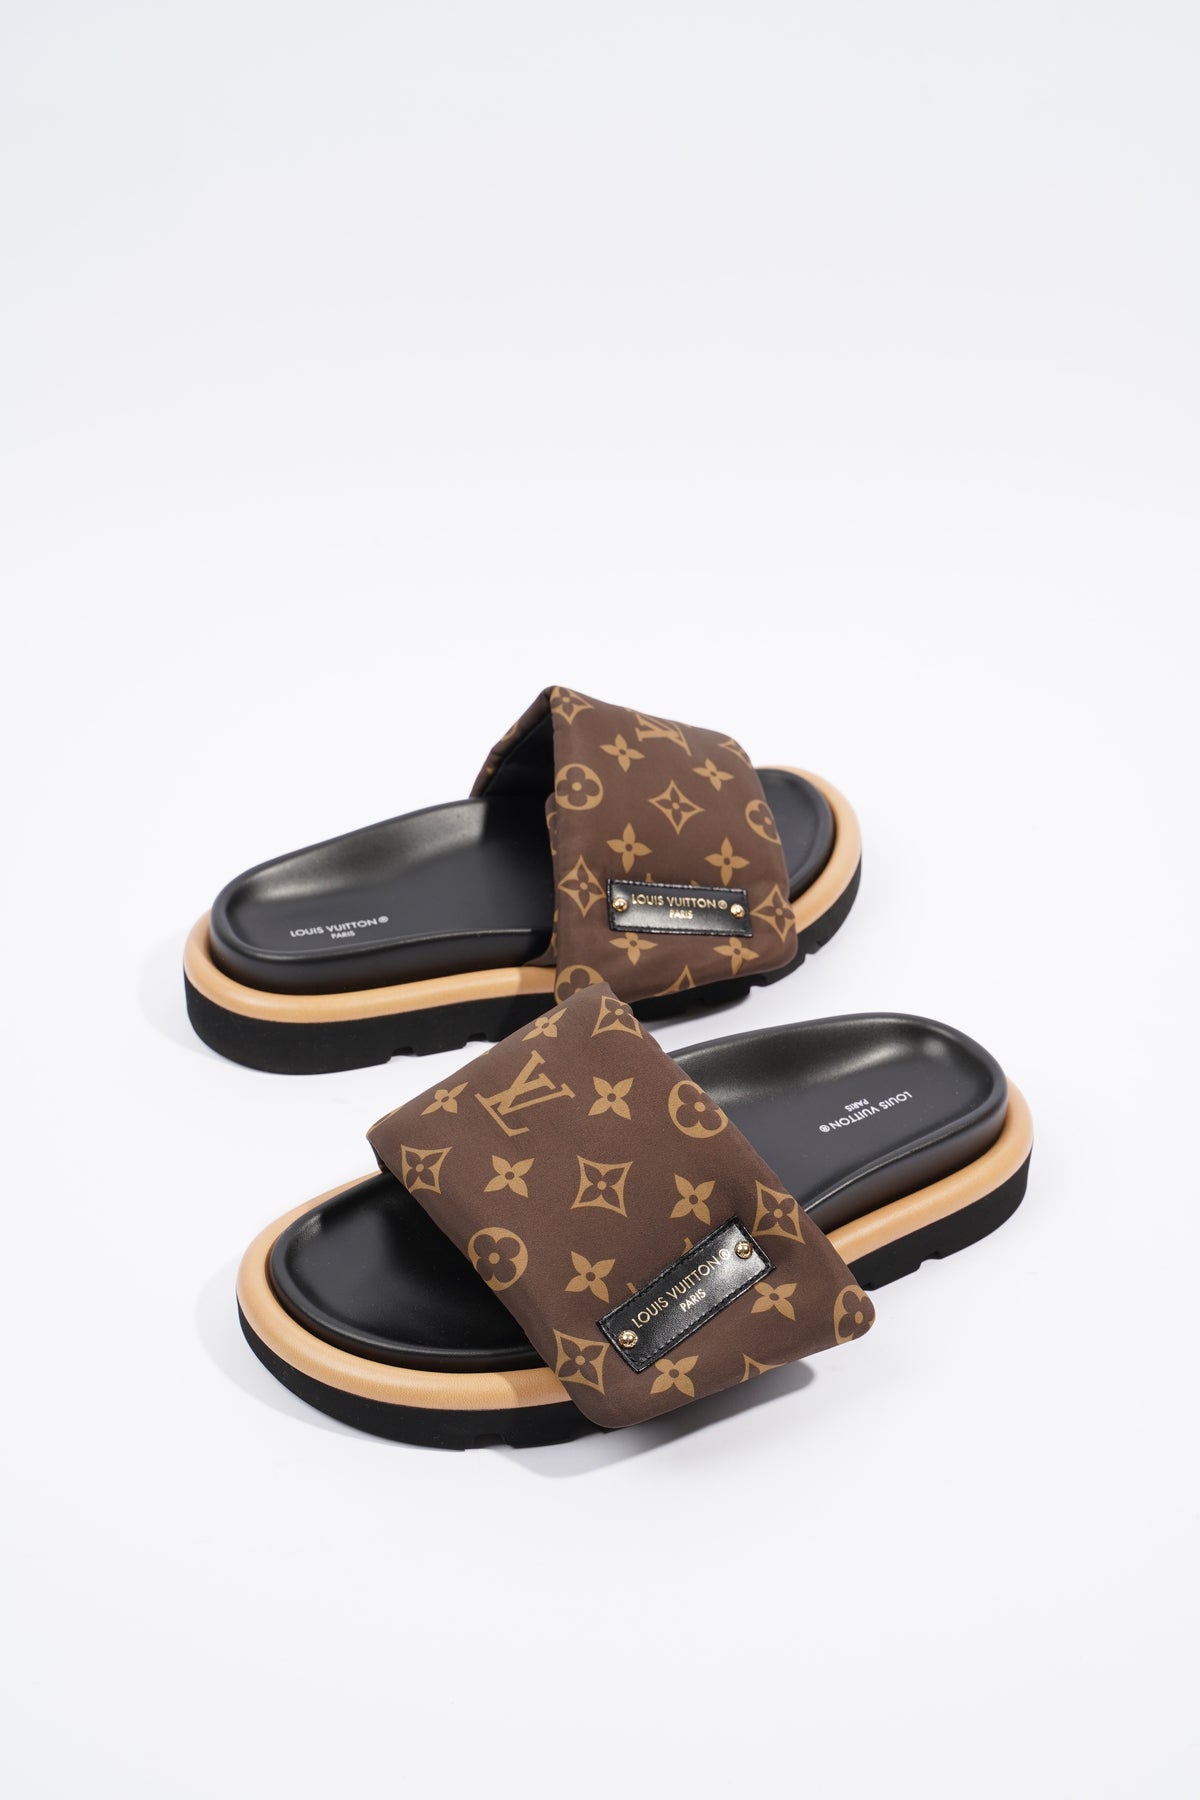 Louis Vuitton, Shoes, Louis Vuitton Puffed Pillow Monogram Slides Sandals  Size 38